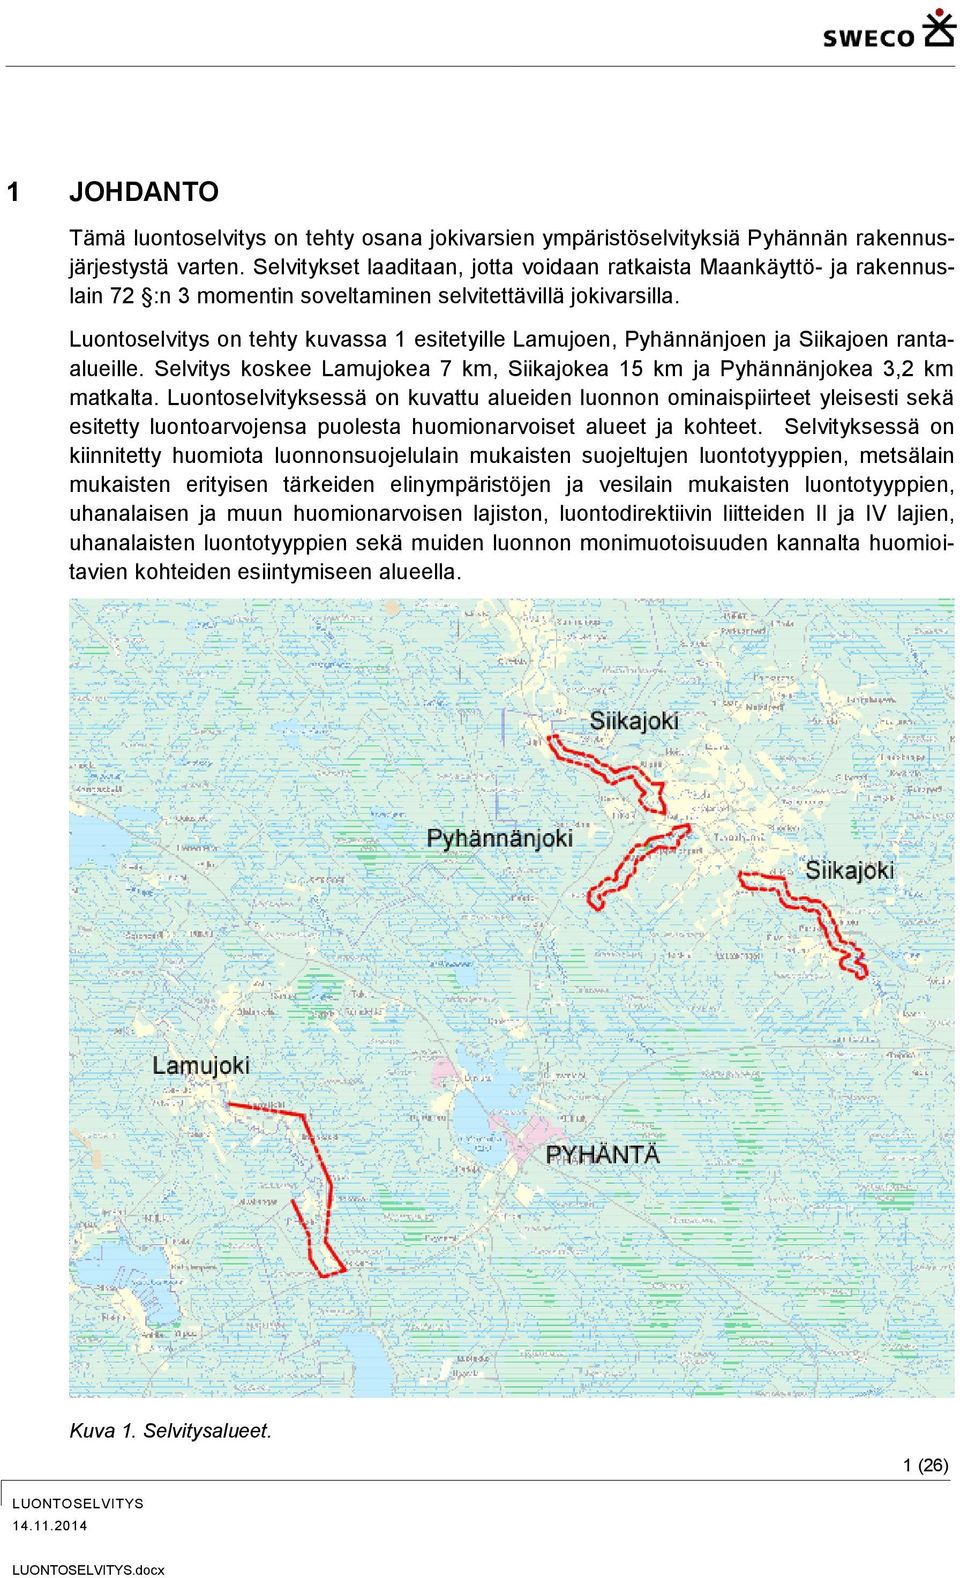 Luontoselvitys on tehty kuvassa 1 esitetyille Lamujoen, Pyhännänjoen ja Siikajoen rantaalueille. Selvitys koskee Lamujokea 7 km, Siikajokea 15 km ja Pyhännänjokea 3,2 km matkalta.